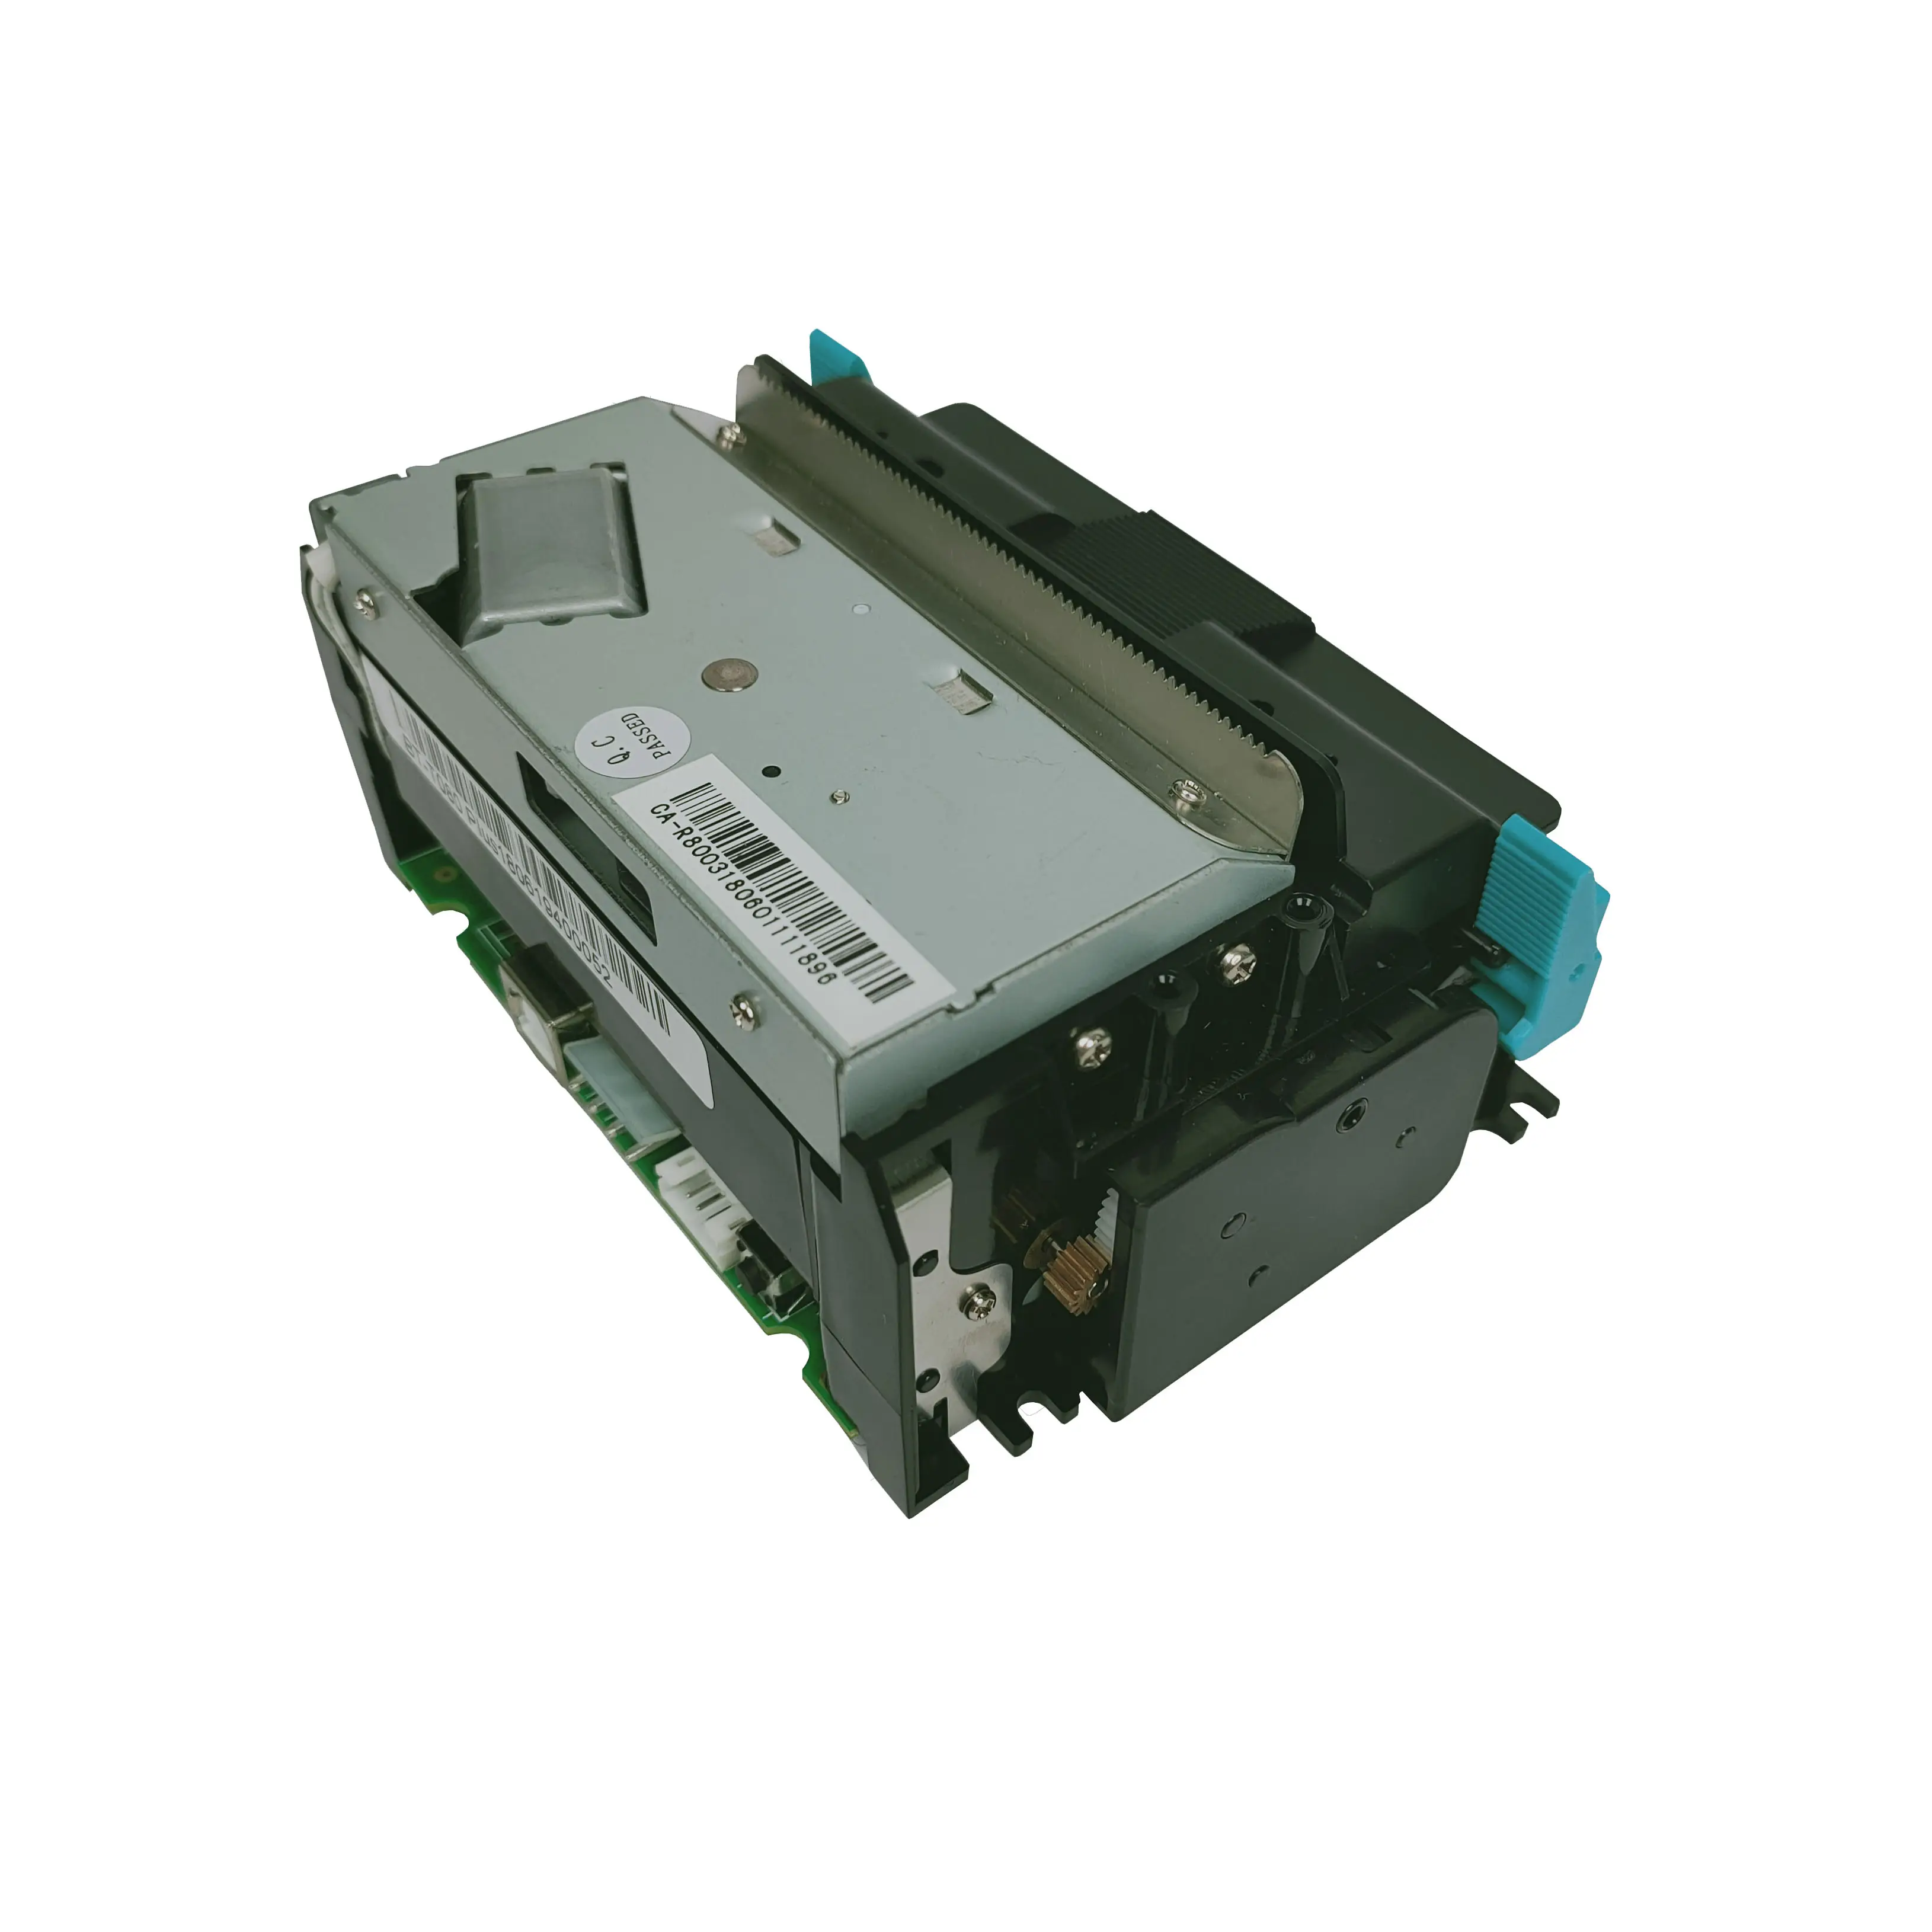 Nicro SNBC BT-T080PLUS — imprimante thermique à tickets de caisse 80mm, Module d'imprimante thermique intégrée pour jeu de rôle, microélectronique